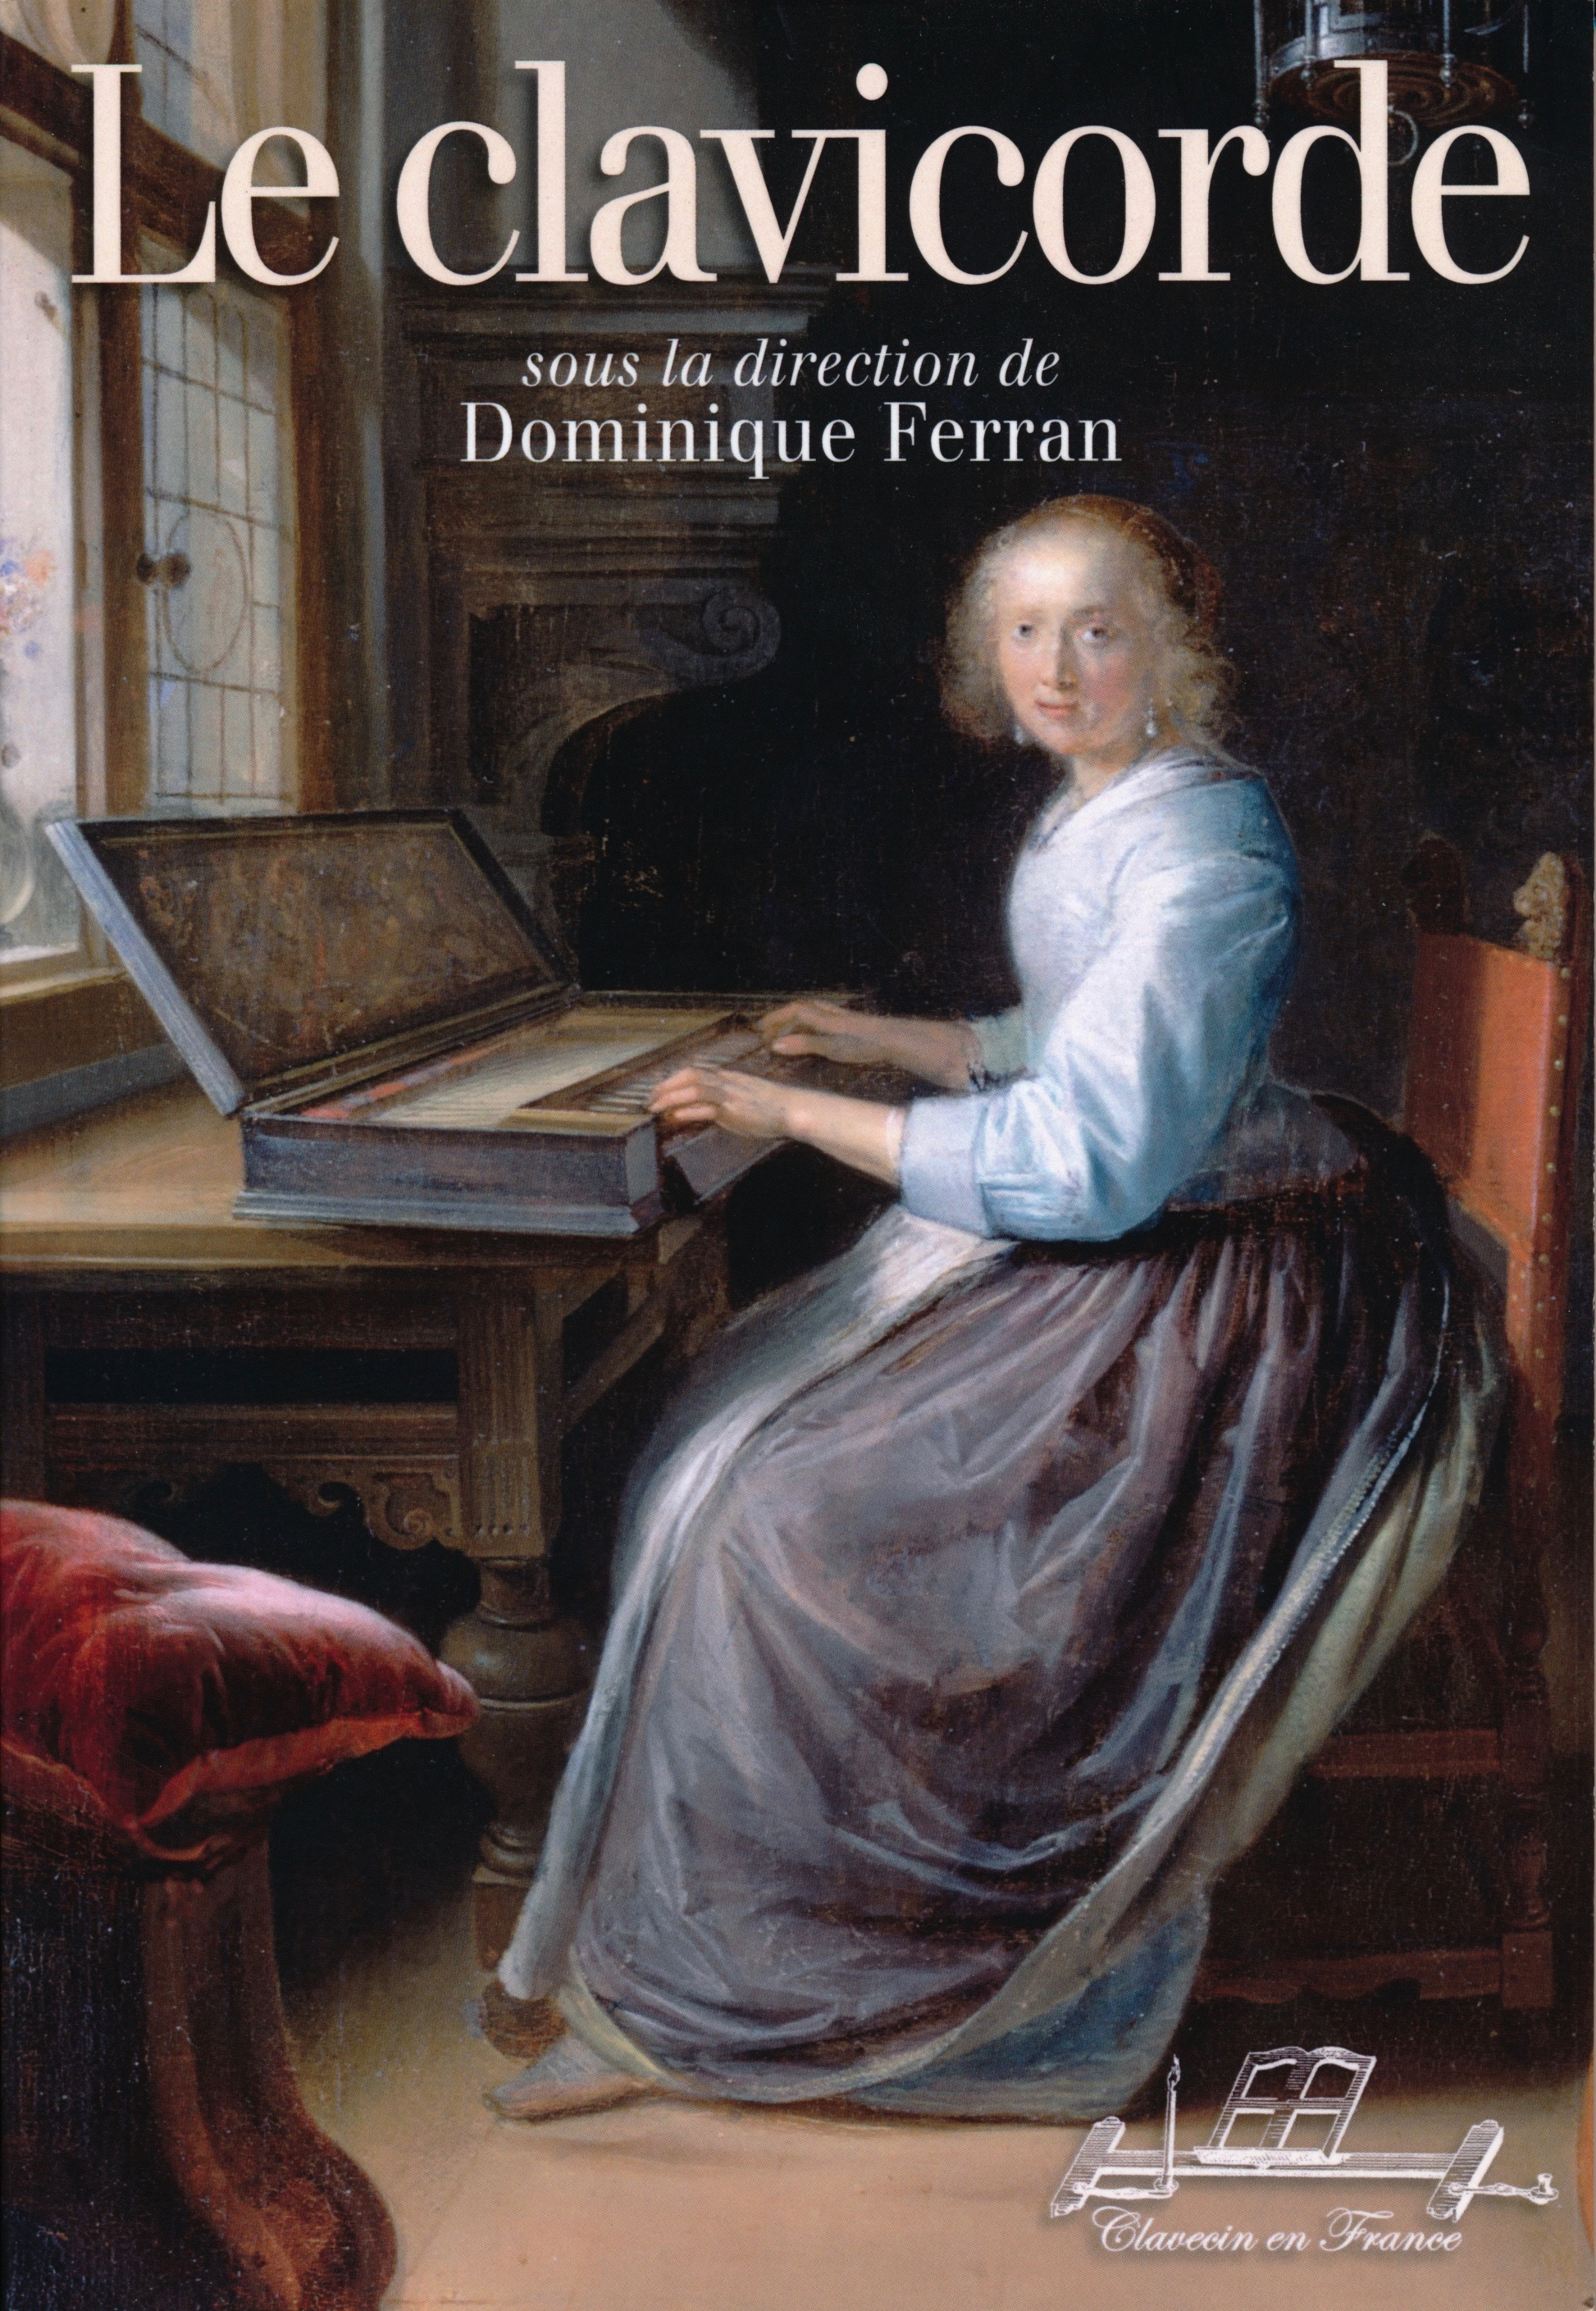 Potvlieghe, J. (2020) Le clavichorde dans la vie de Jean Sébastian Bach. In: D. Ferran (Ed), le Clavichorde, p.87-120, Clavecin de France, ISBN 0 782957 189205.